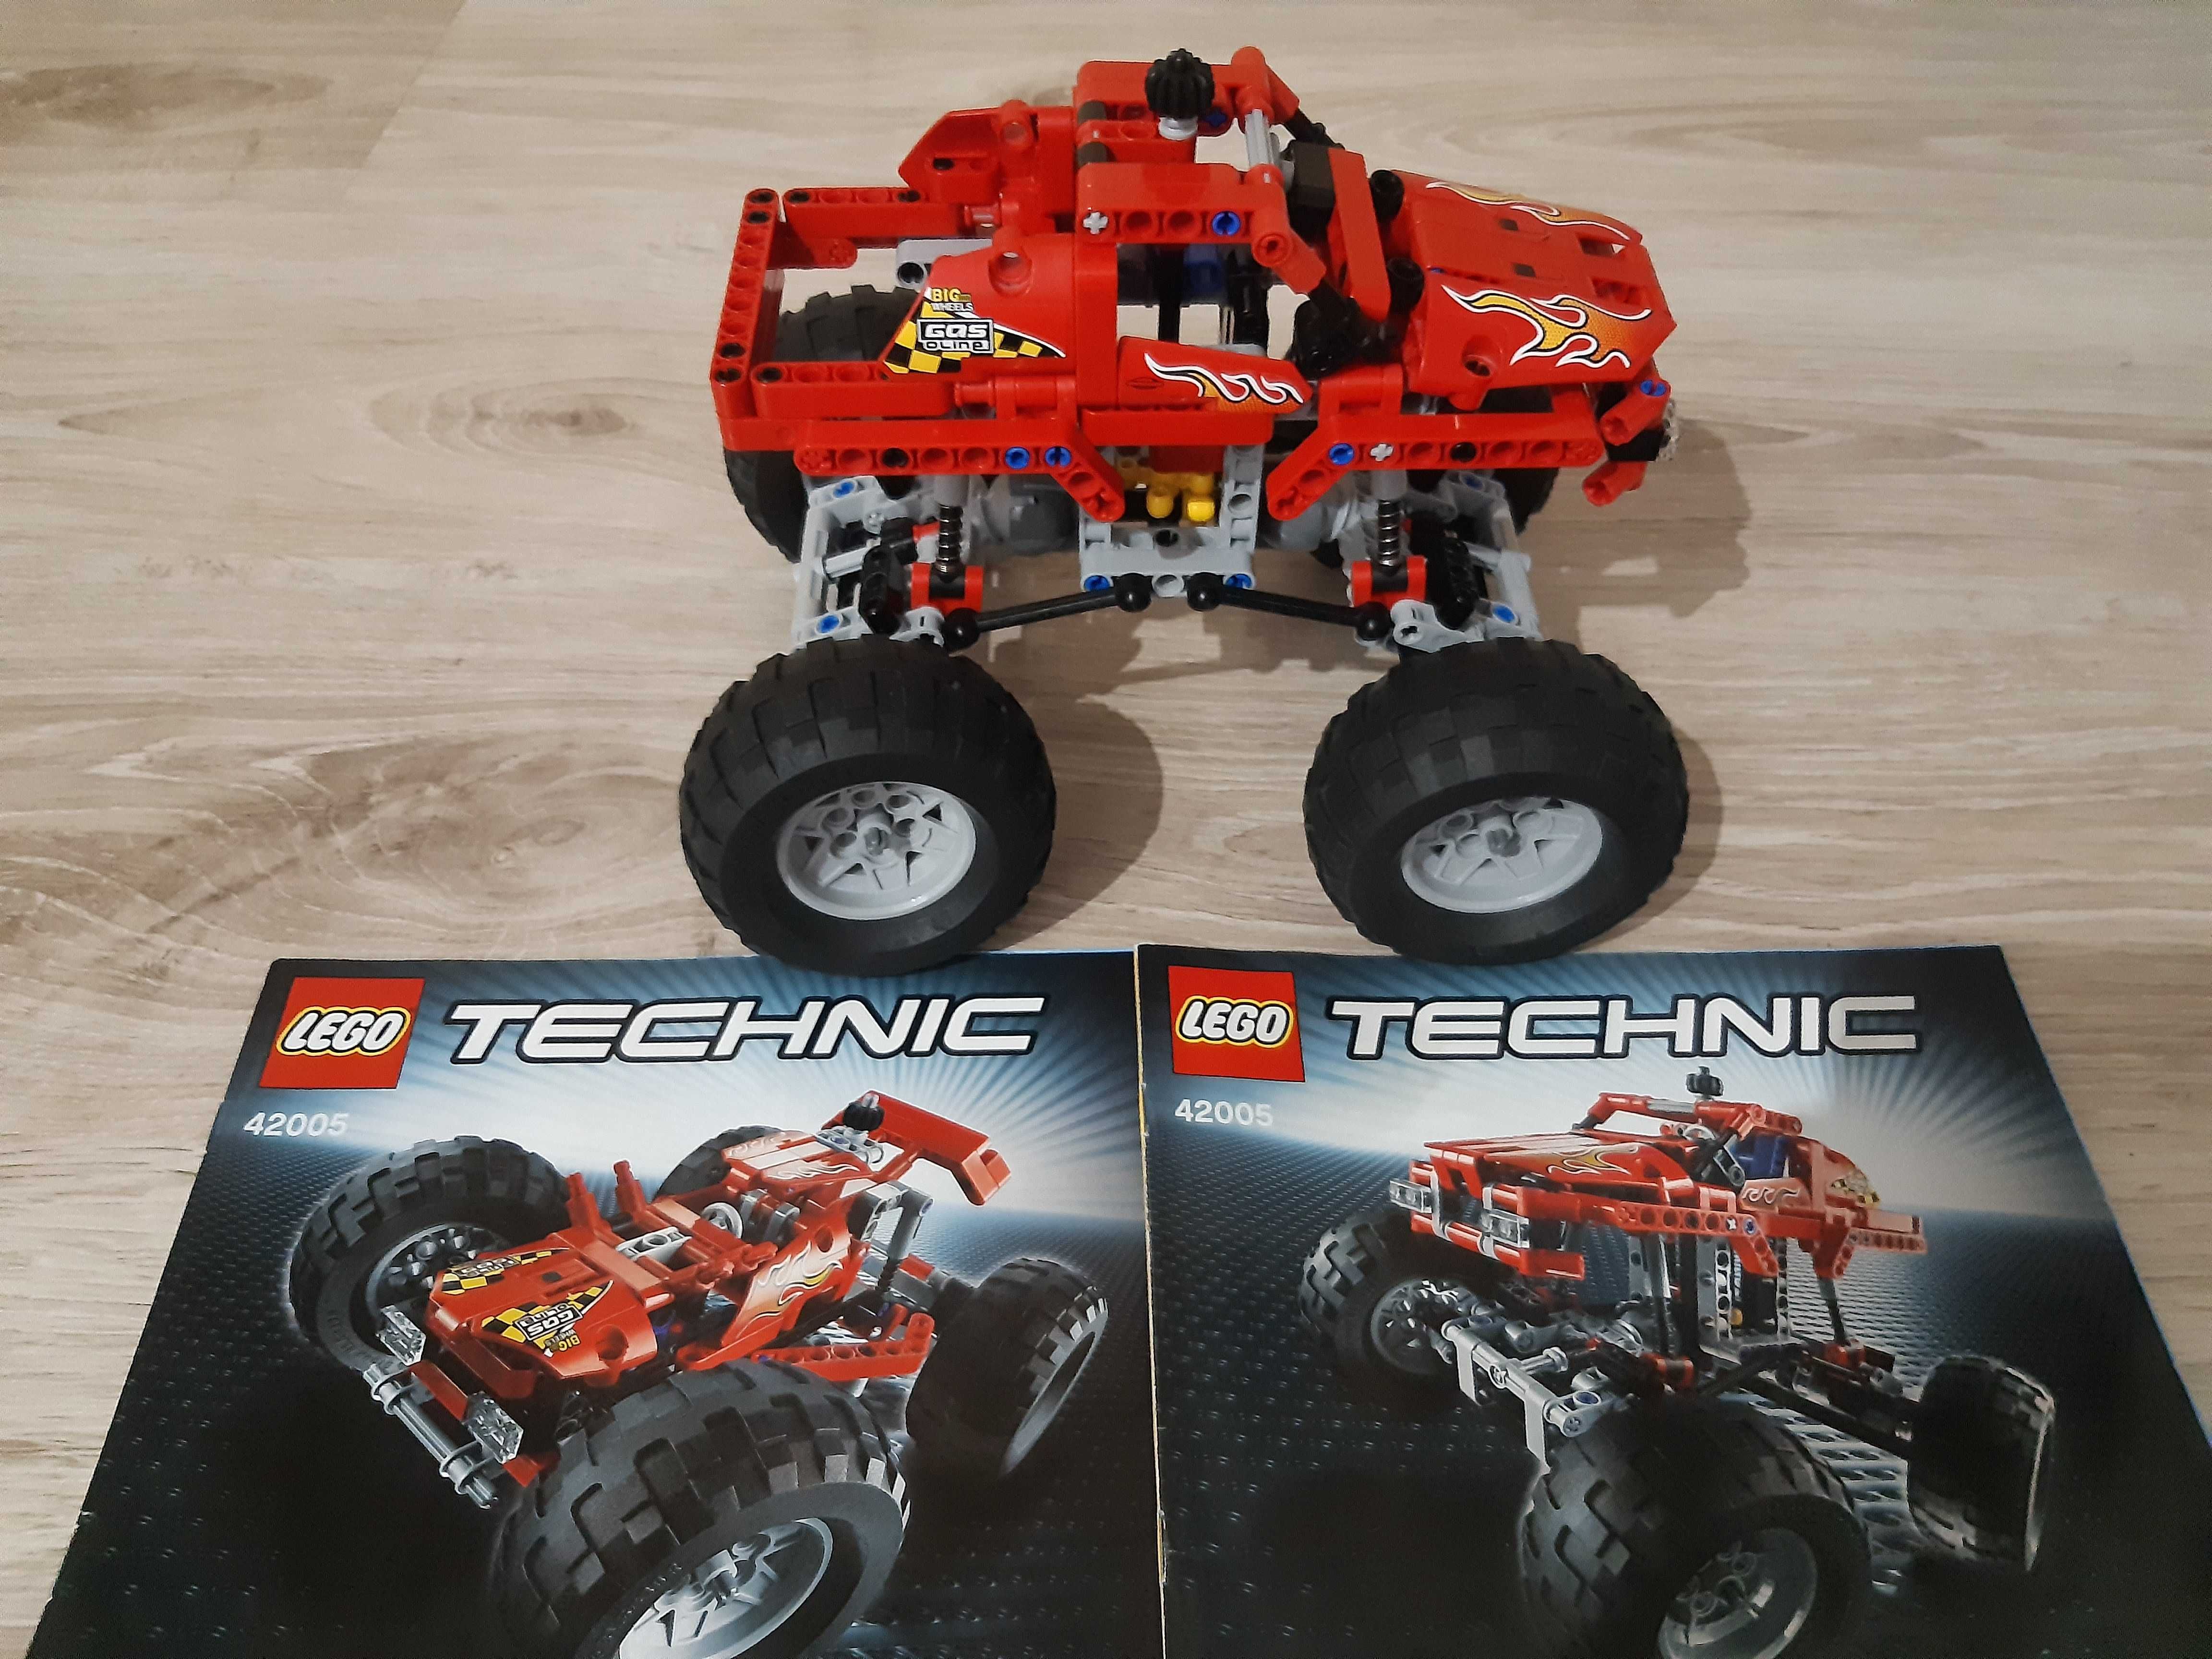 Sprzedam klocki Lego Technic 42005 (2w1)